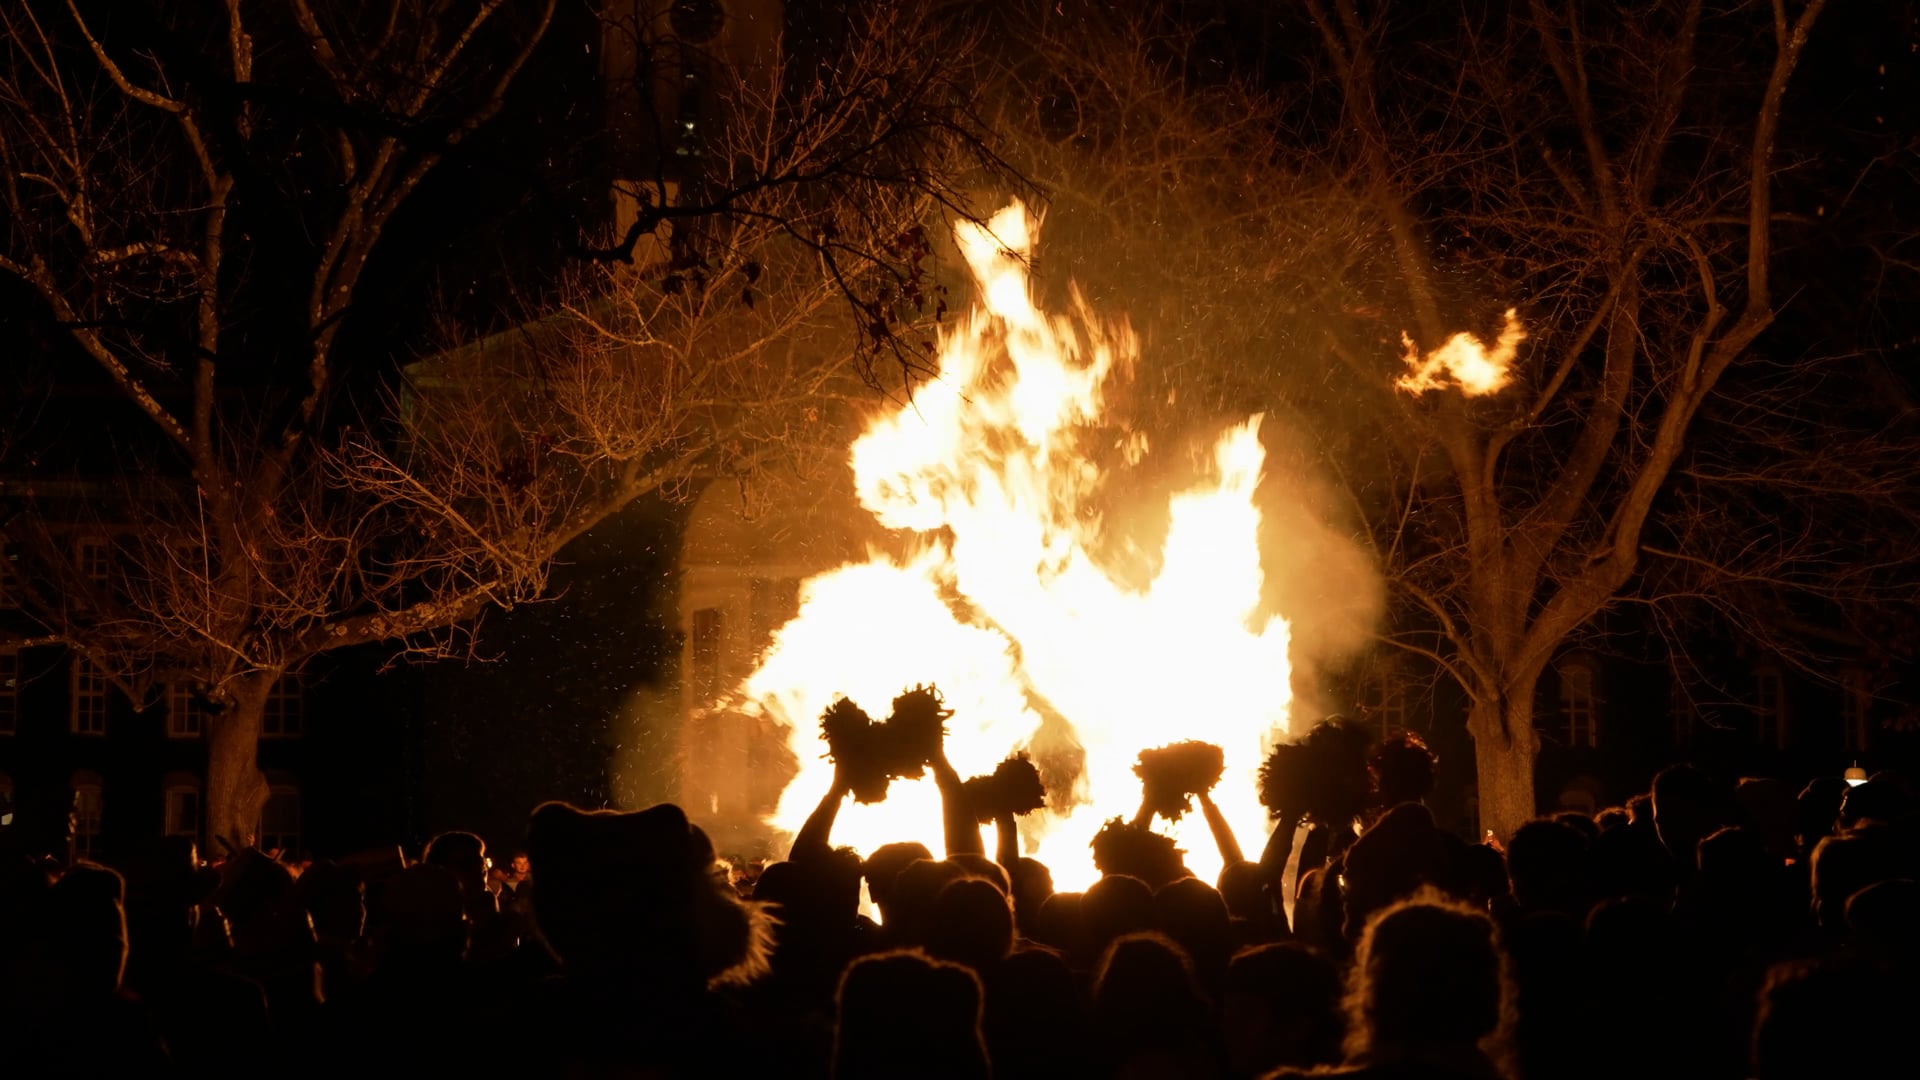 Bonfire @ Princeton